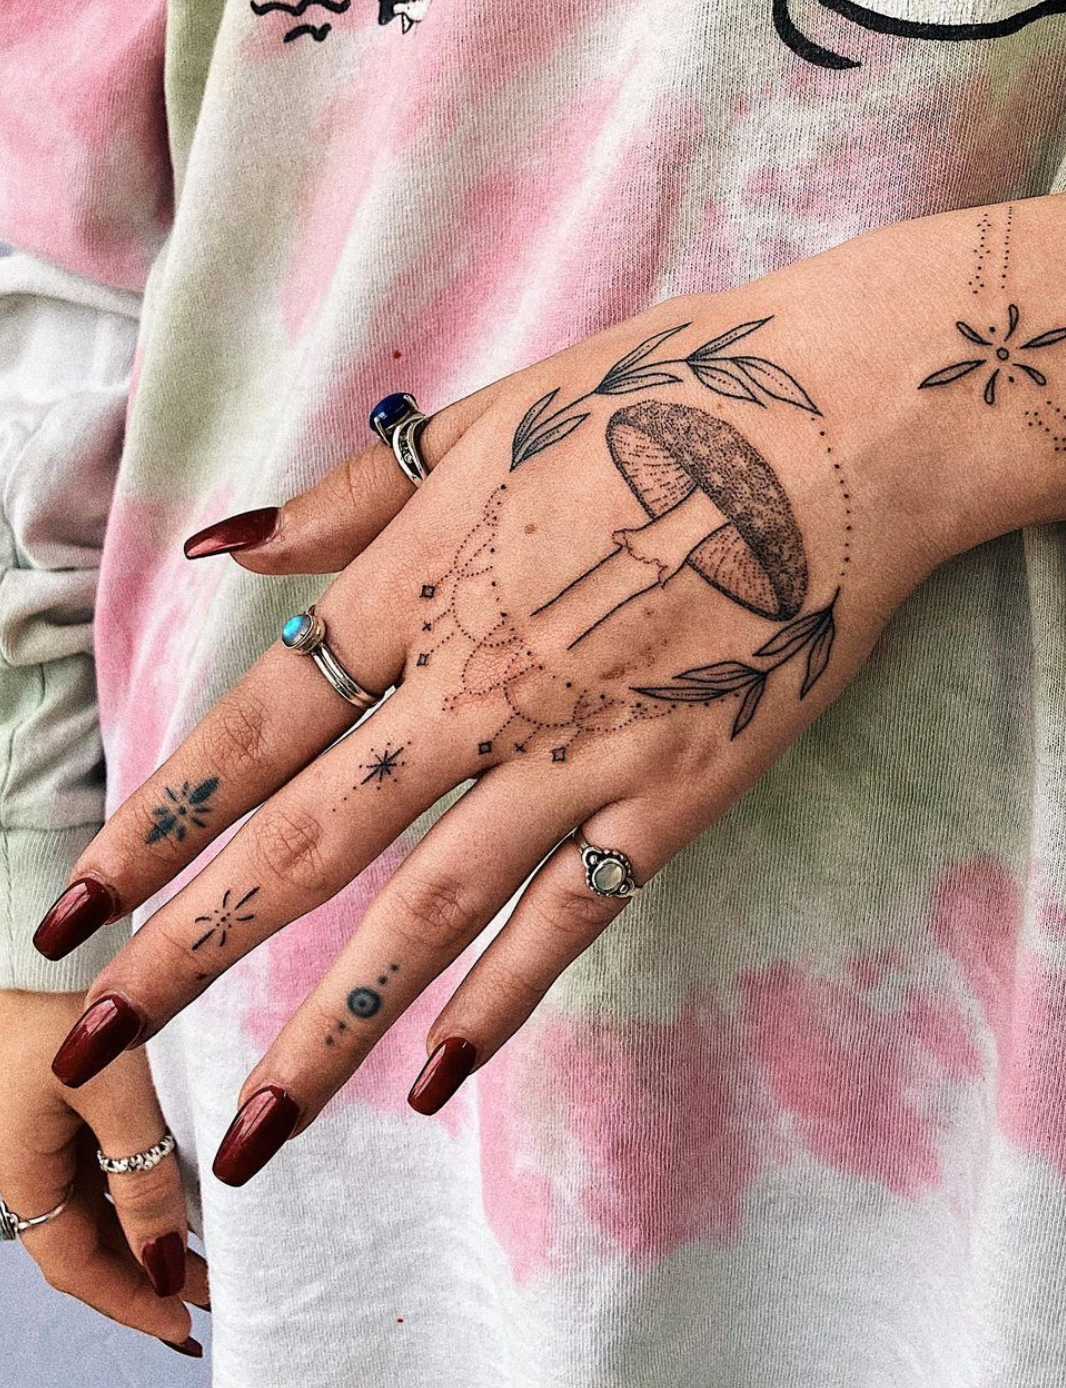 Ellie's Tattoo in 2023  Cute tattoos, Small tattoos, Sleeve tattoos